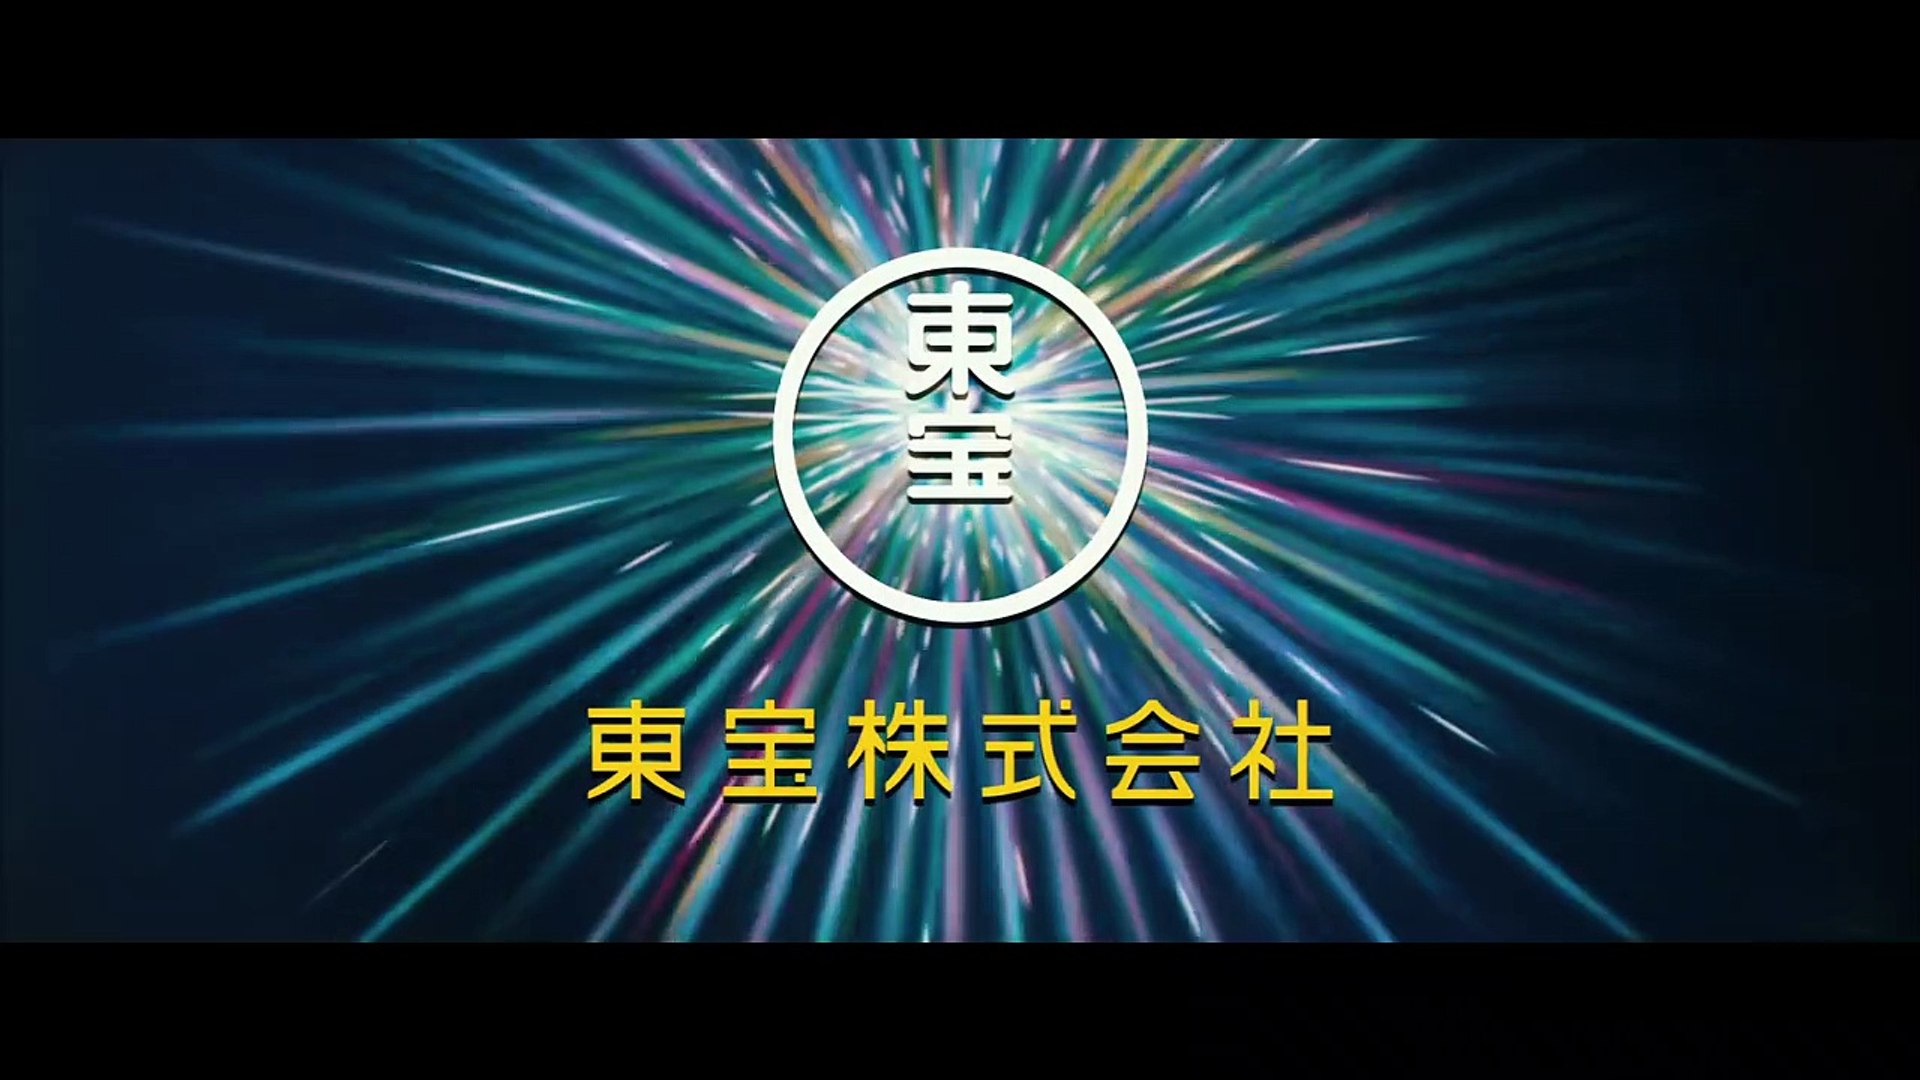 Ataque dos Titãs - Shingeki no Kyojin  Assista o trailer da série  live-action